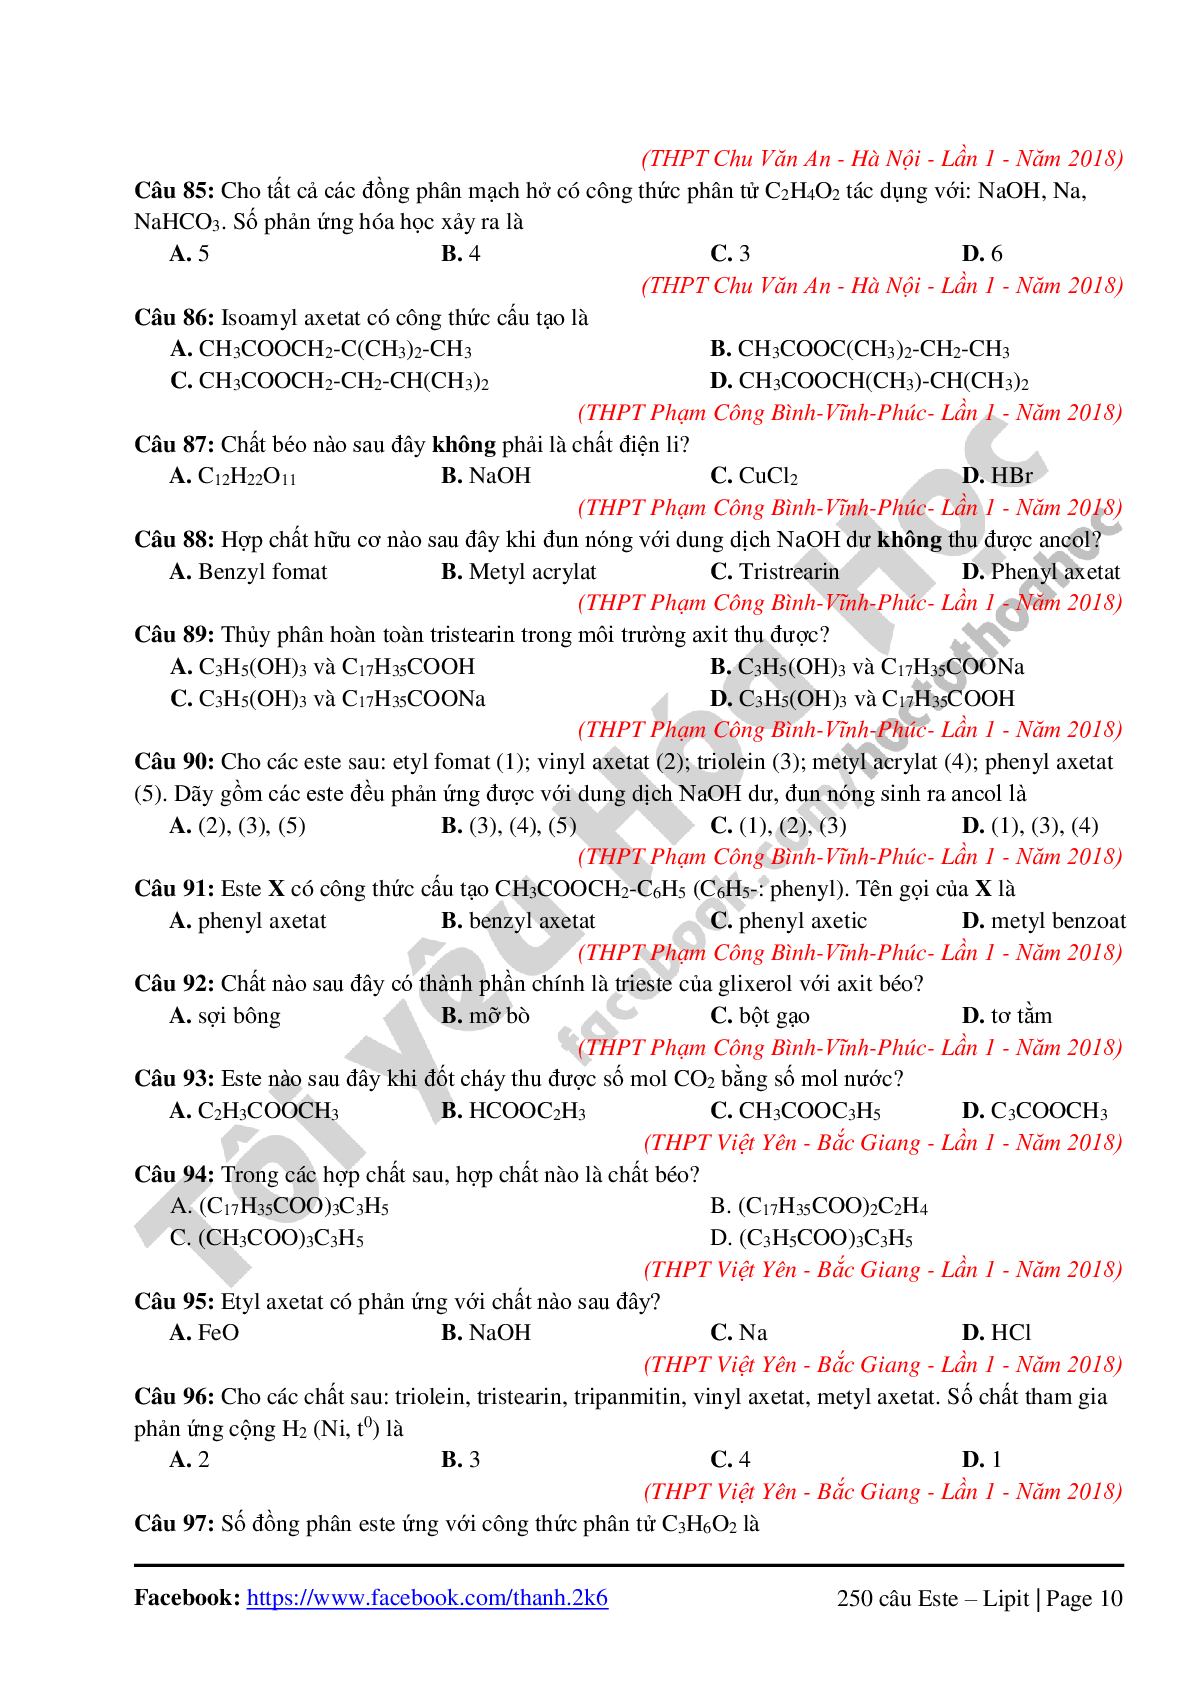 260 câu lý thuyết chuyên đề Este-Lipit môn Hóa học lớp 12 (trang 10)